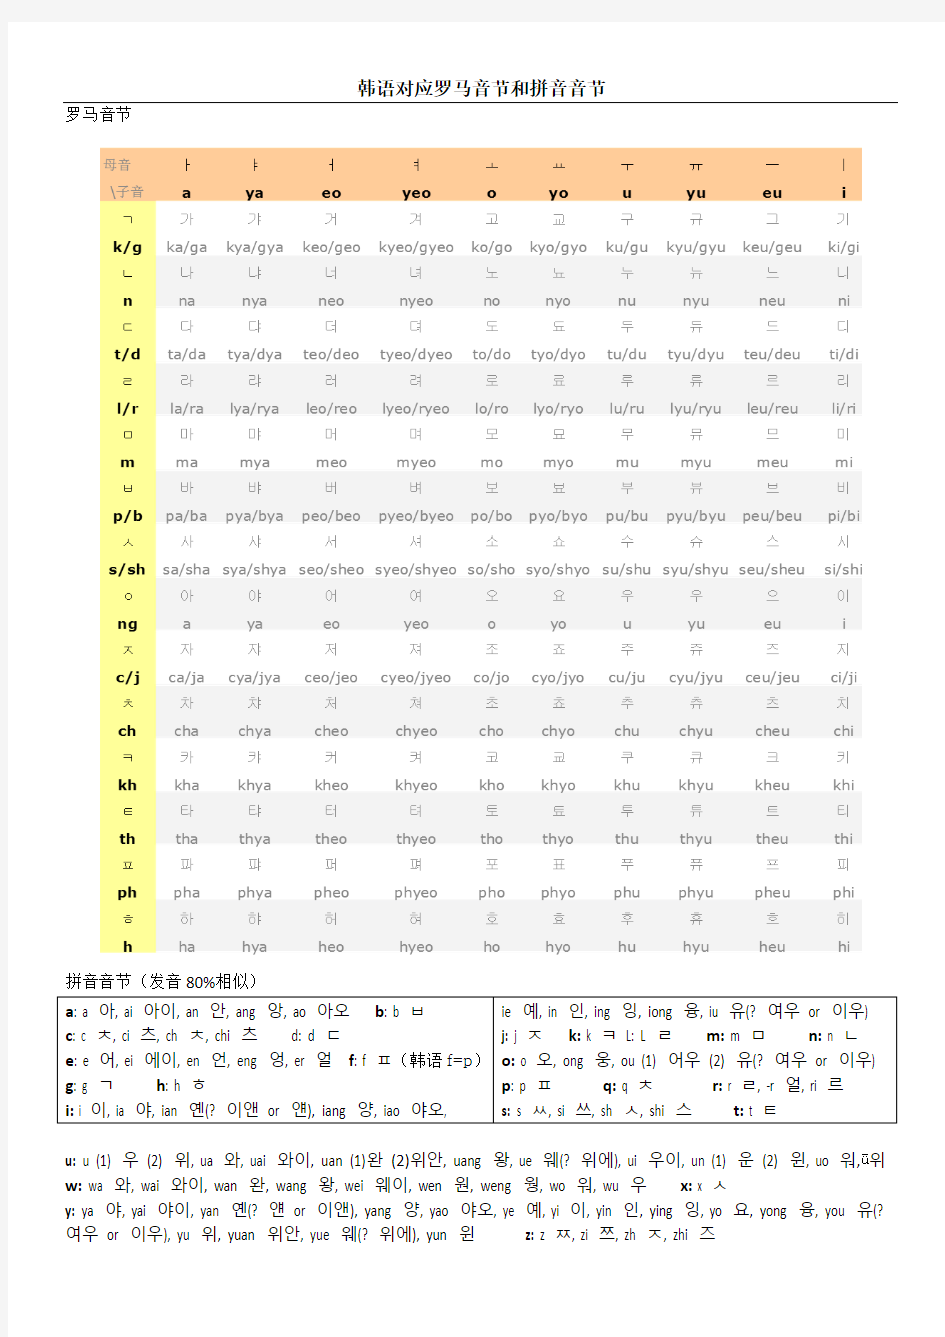 韩语发音对照